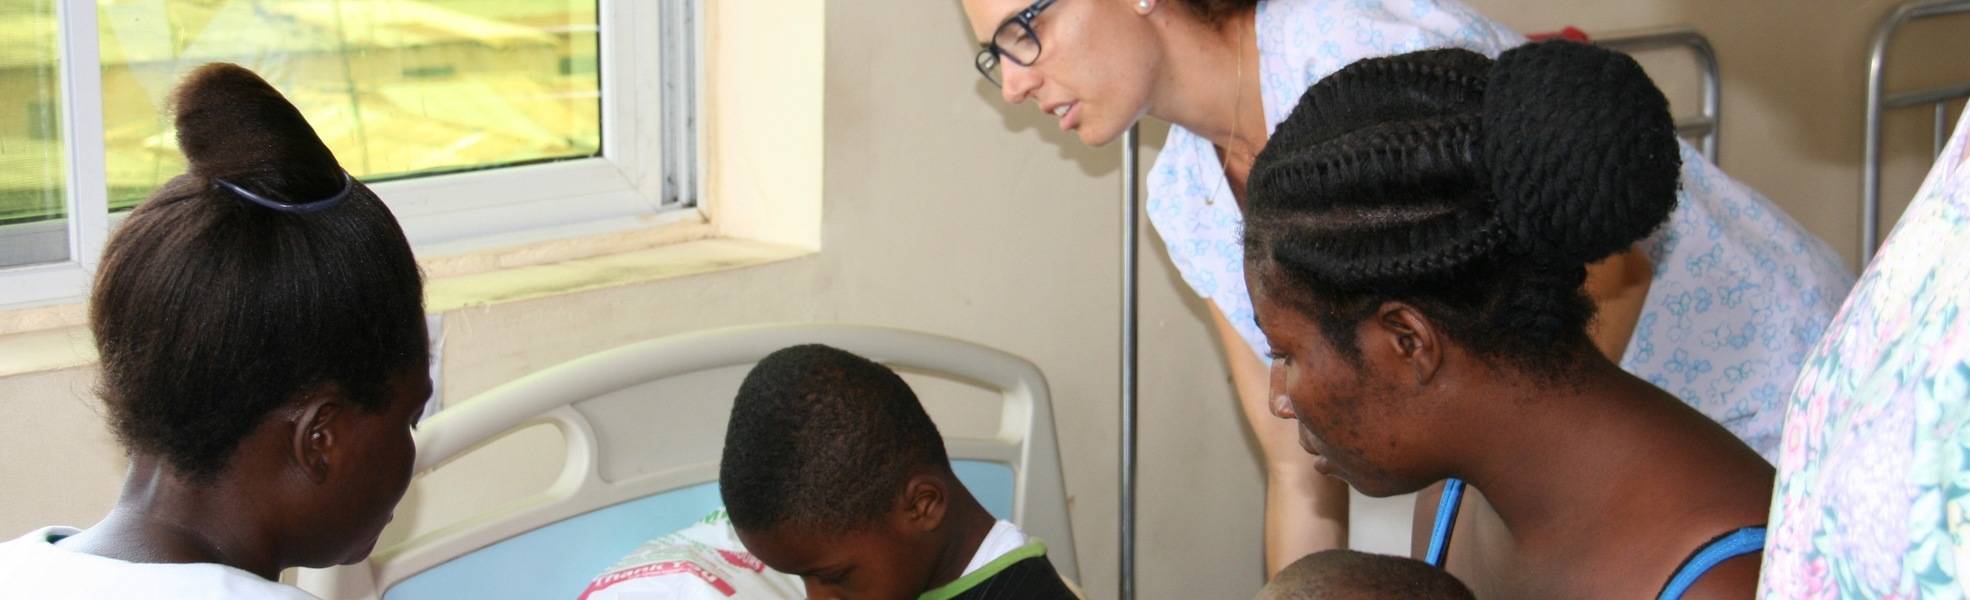 Medizin-Praktikum in Ghana – praktische Erfahrungen an einem Krankenhaus sammeln